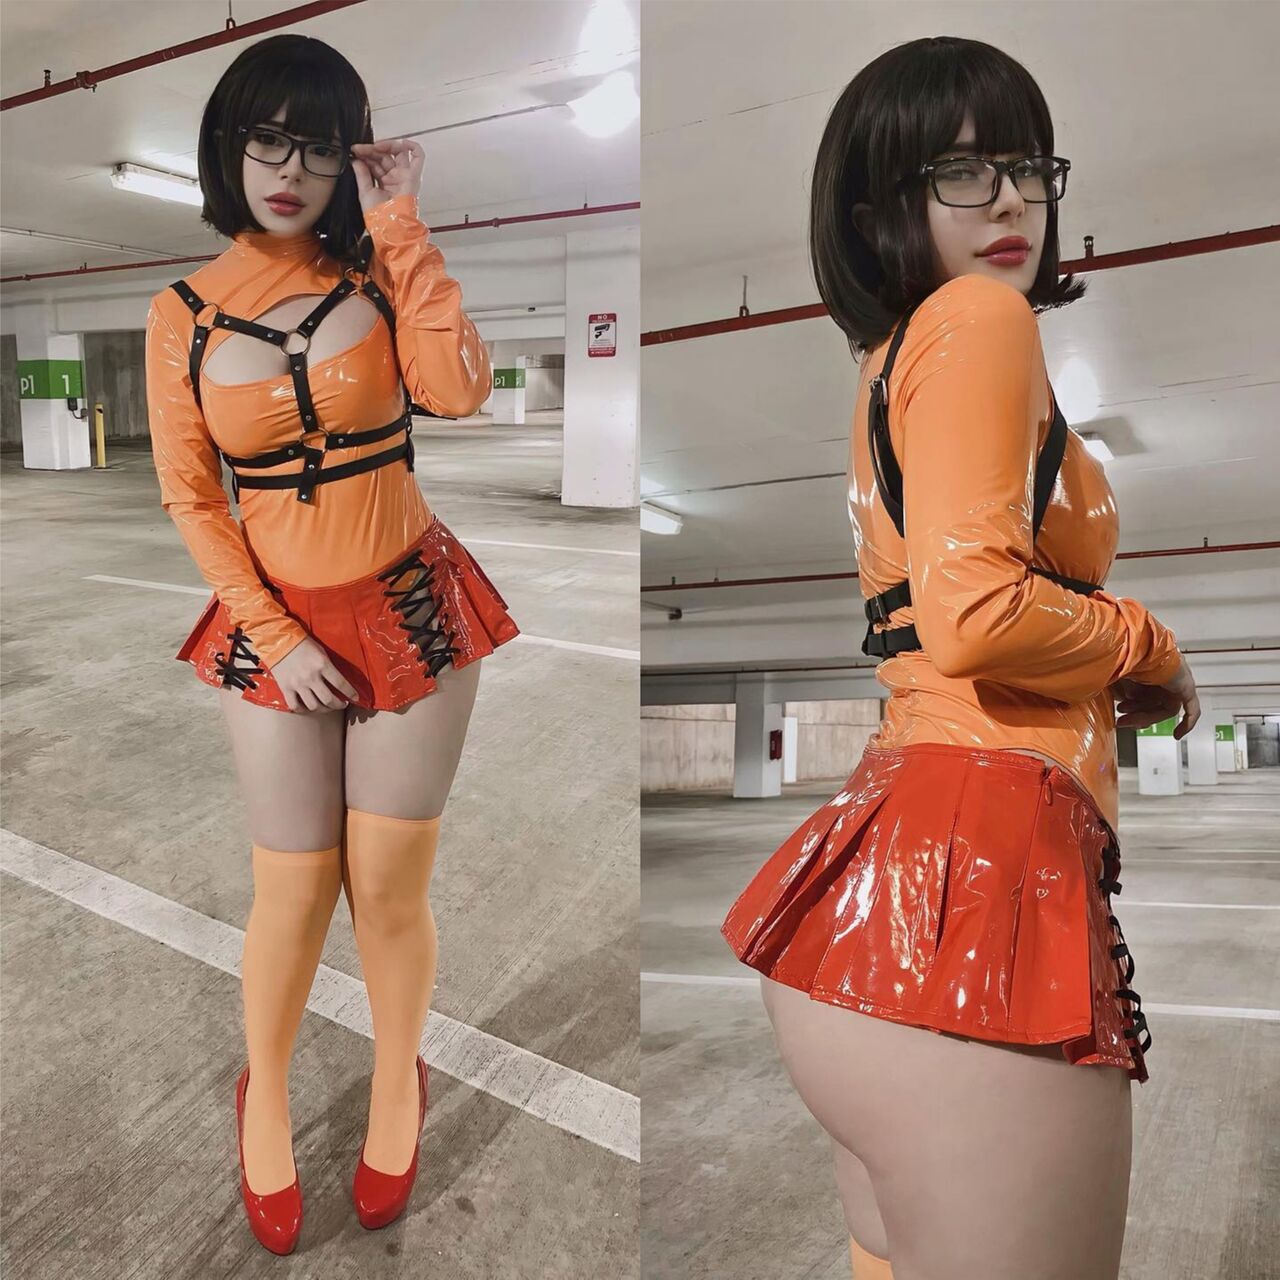 Hime Ahri – Velma